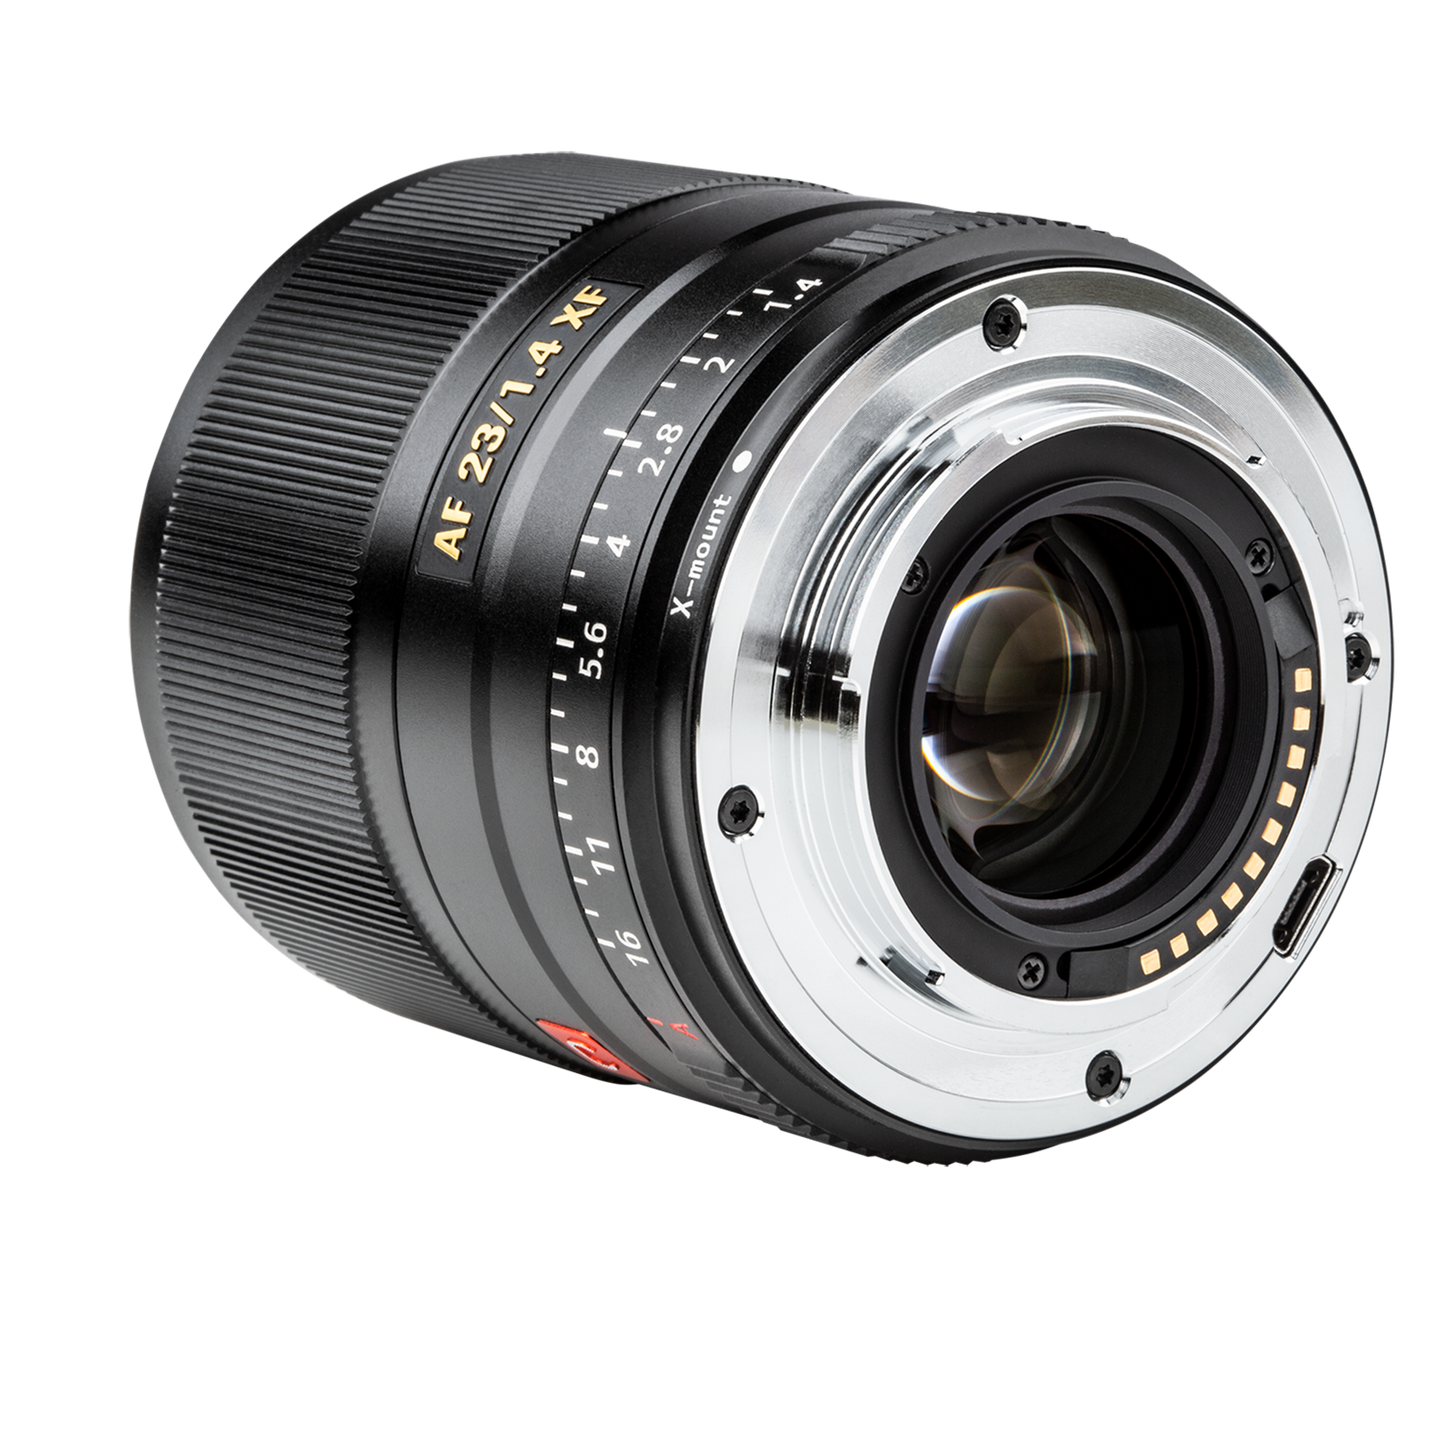 Viltrox lens FX-23mm f/1.4 with Fuji X-mount